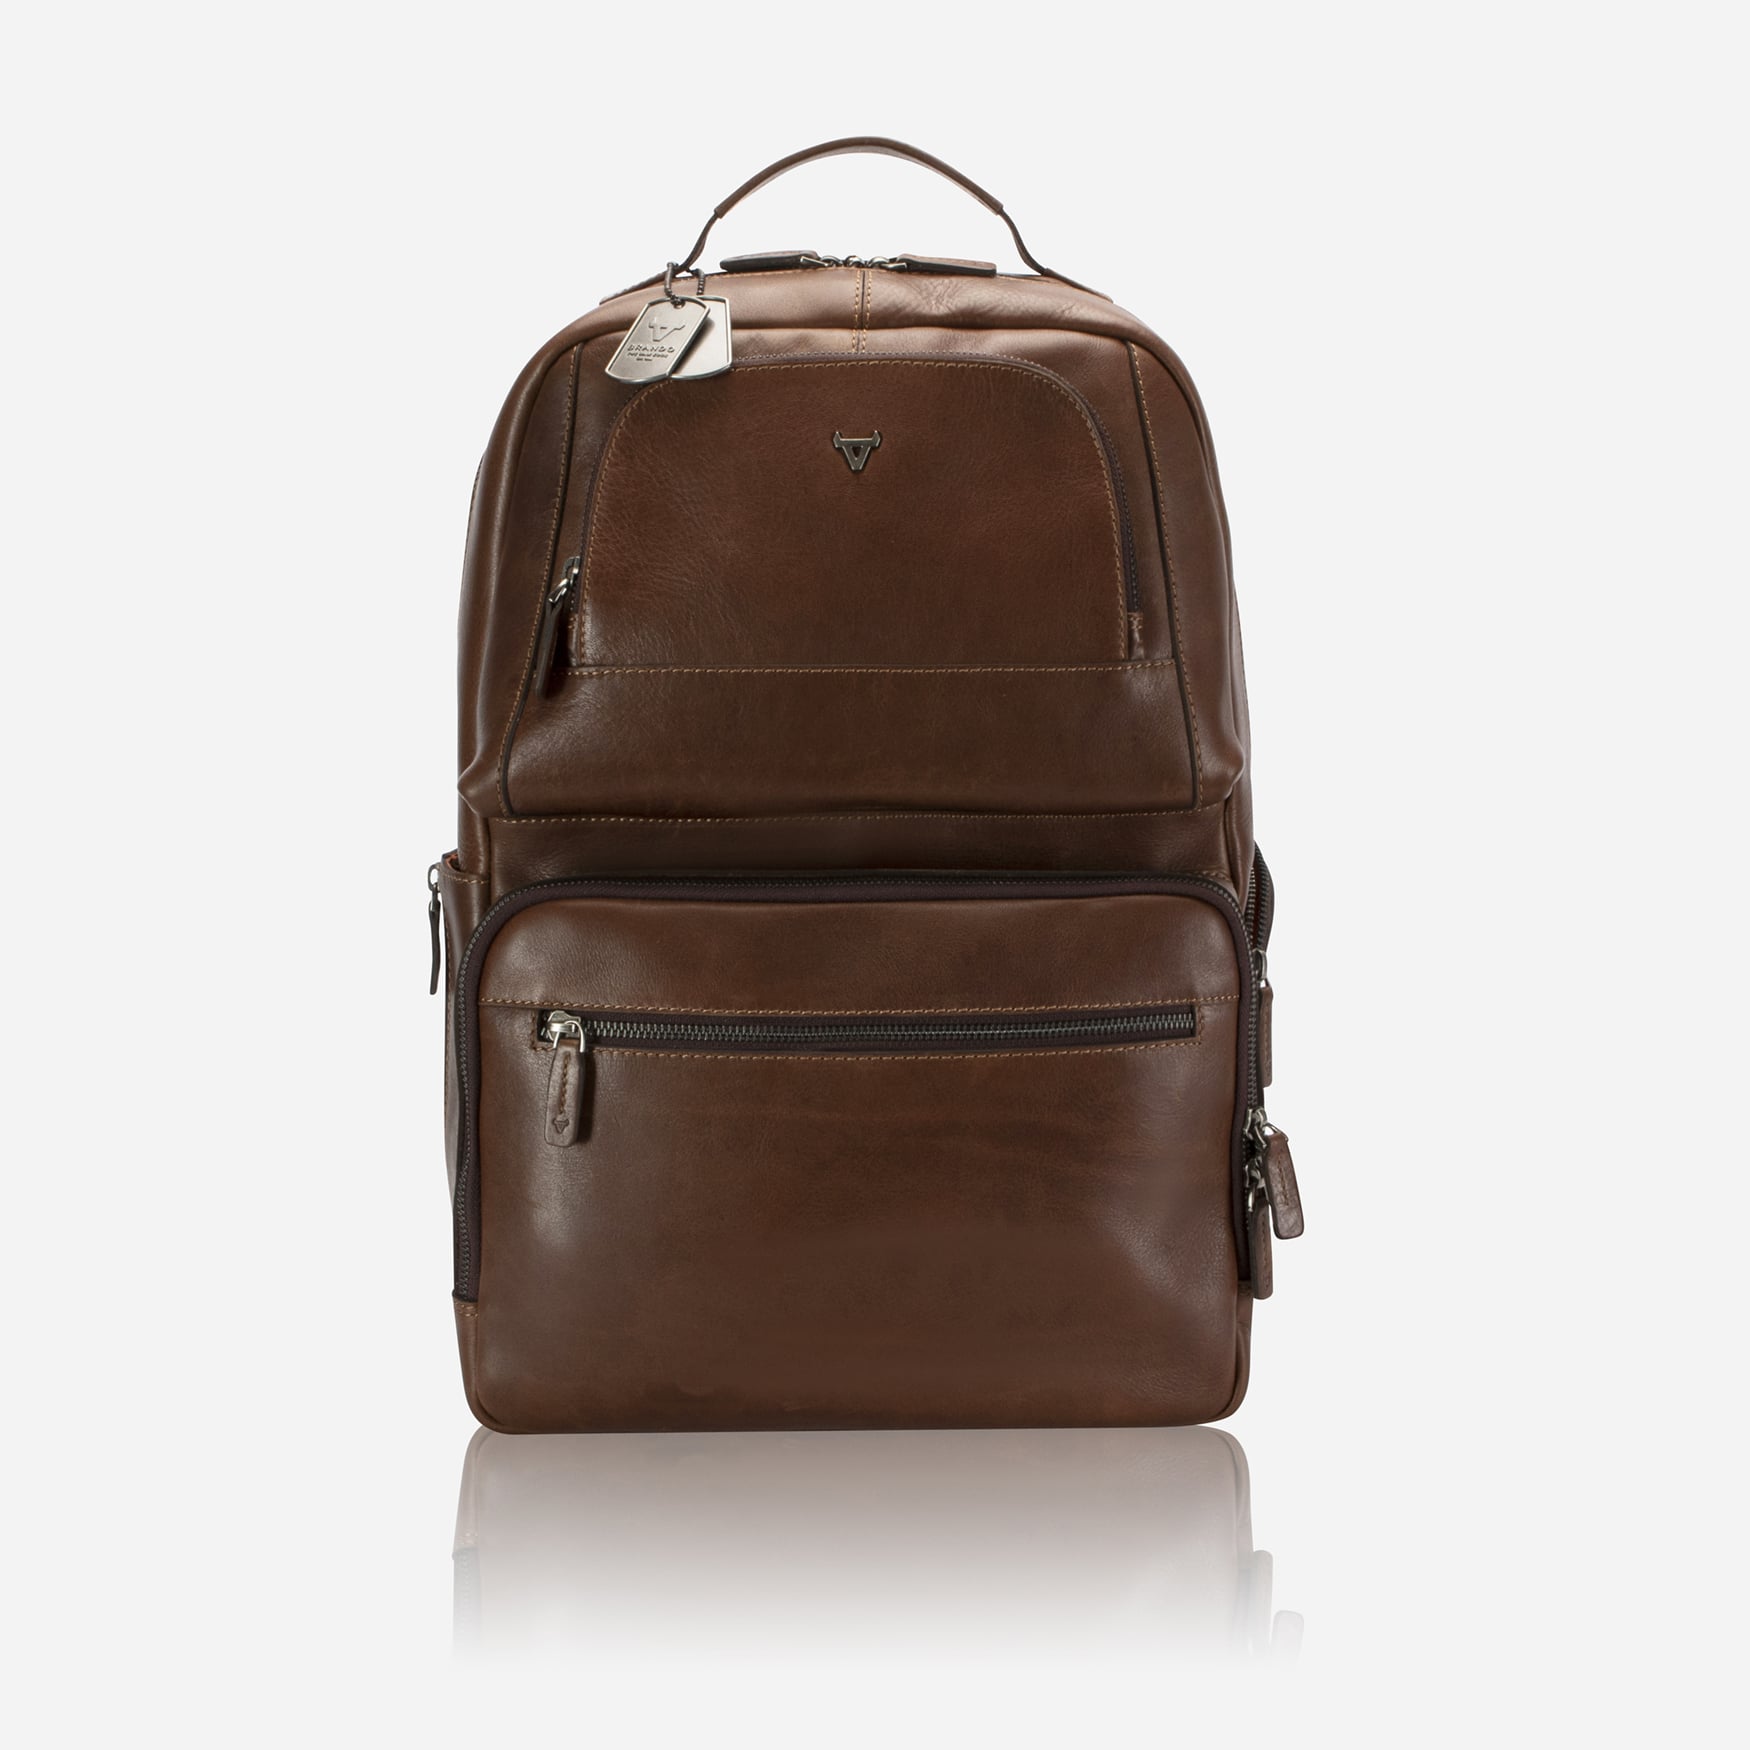 Brosnan 15" Backpack, Brown